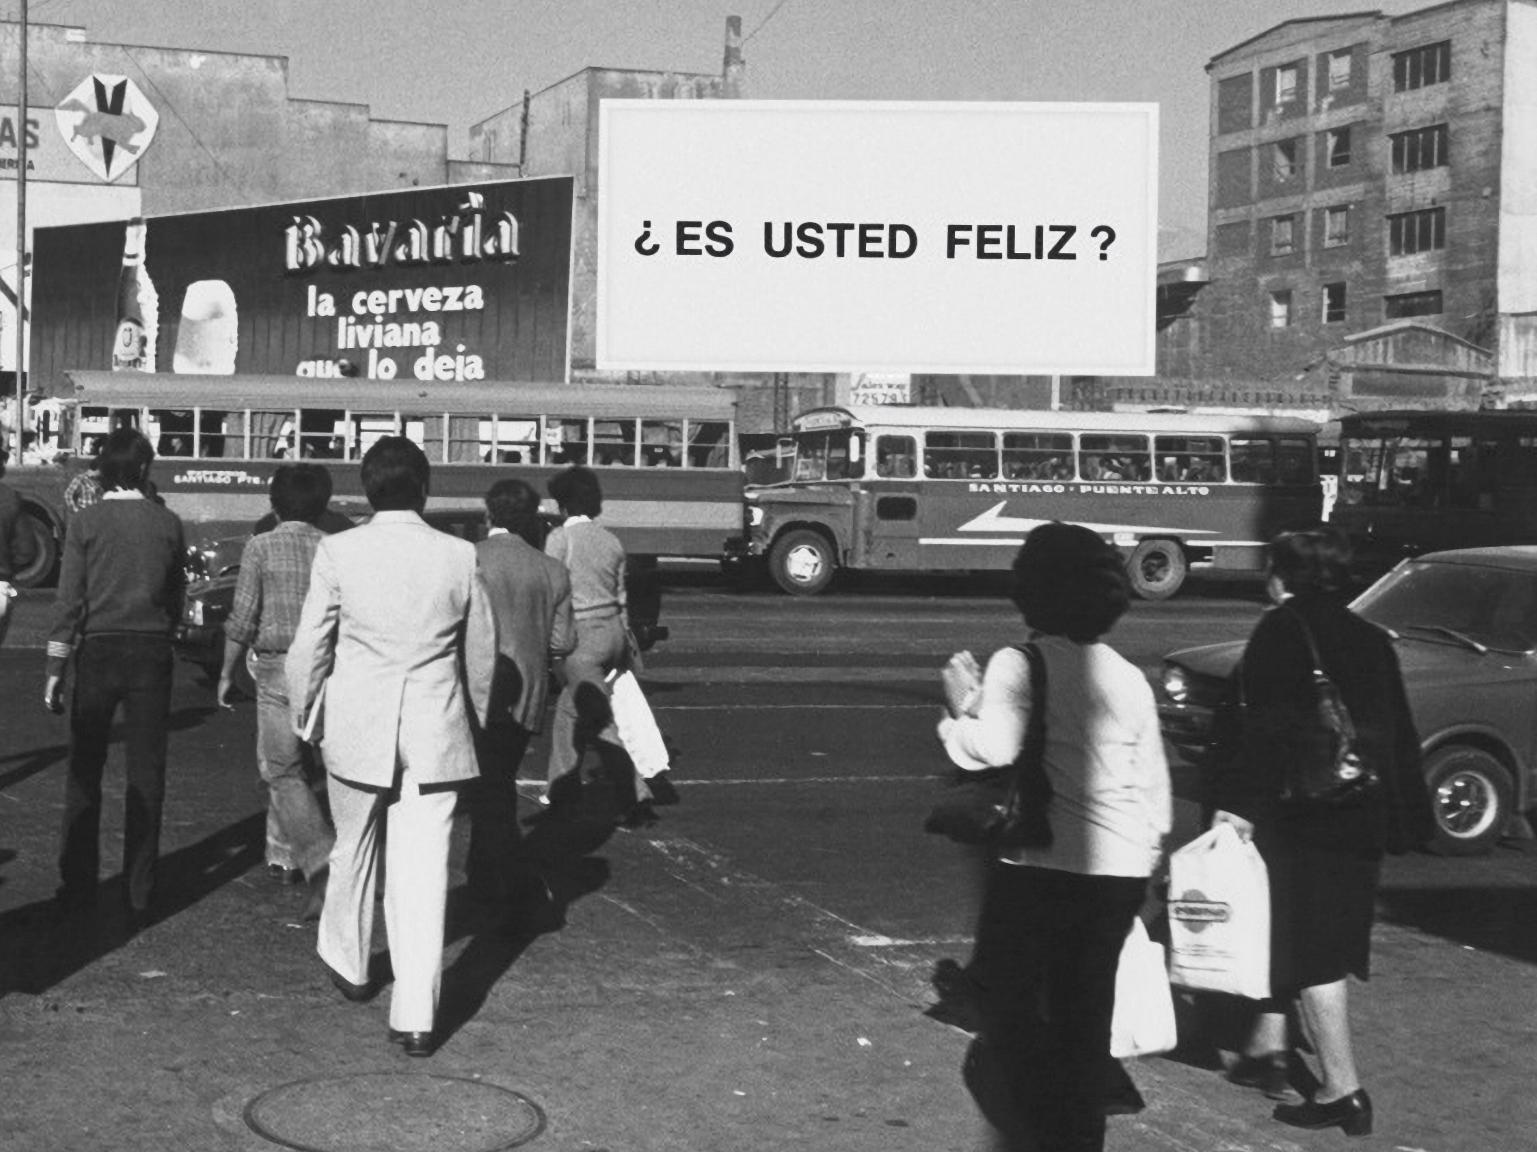 Fotografía en blanco y negro de personas caminando por la calle. Al fondo se visualiza un letrero con la pregunta ¿Es usted feliz?